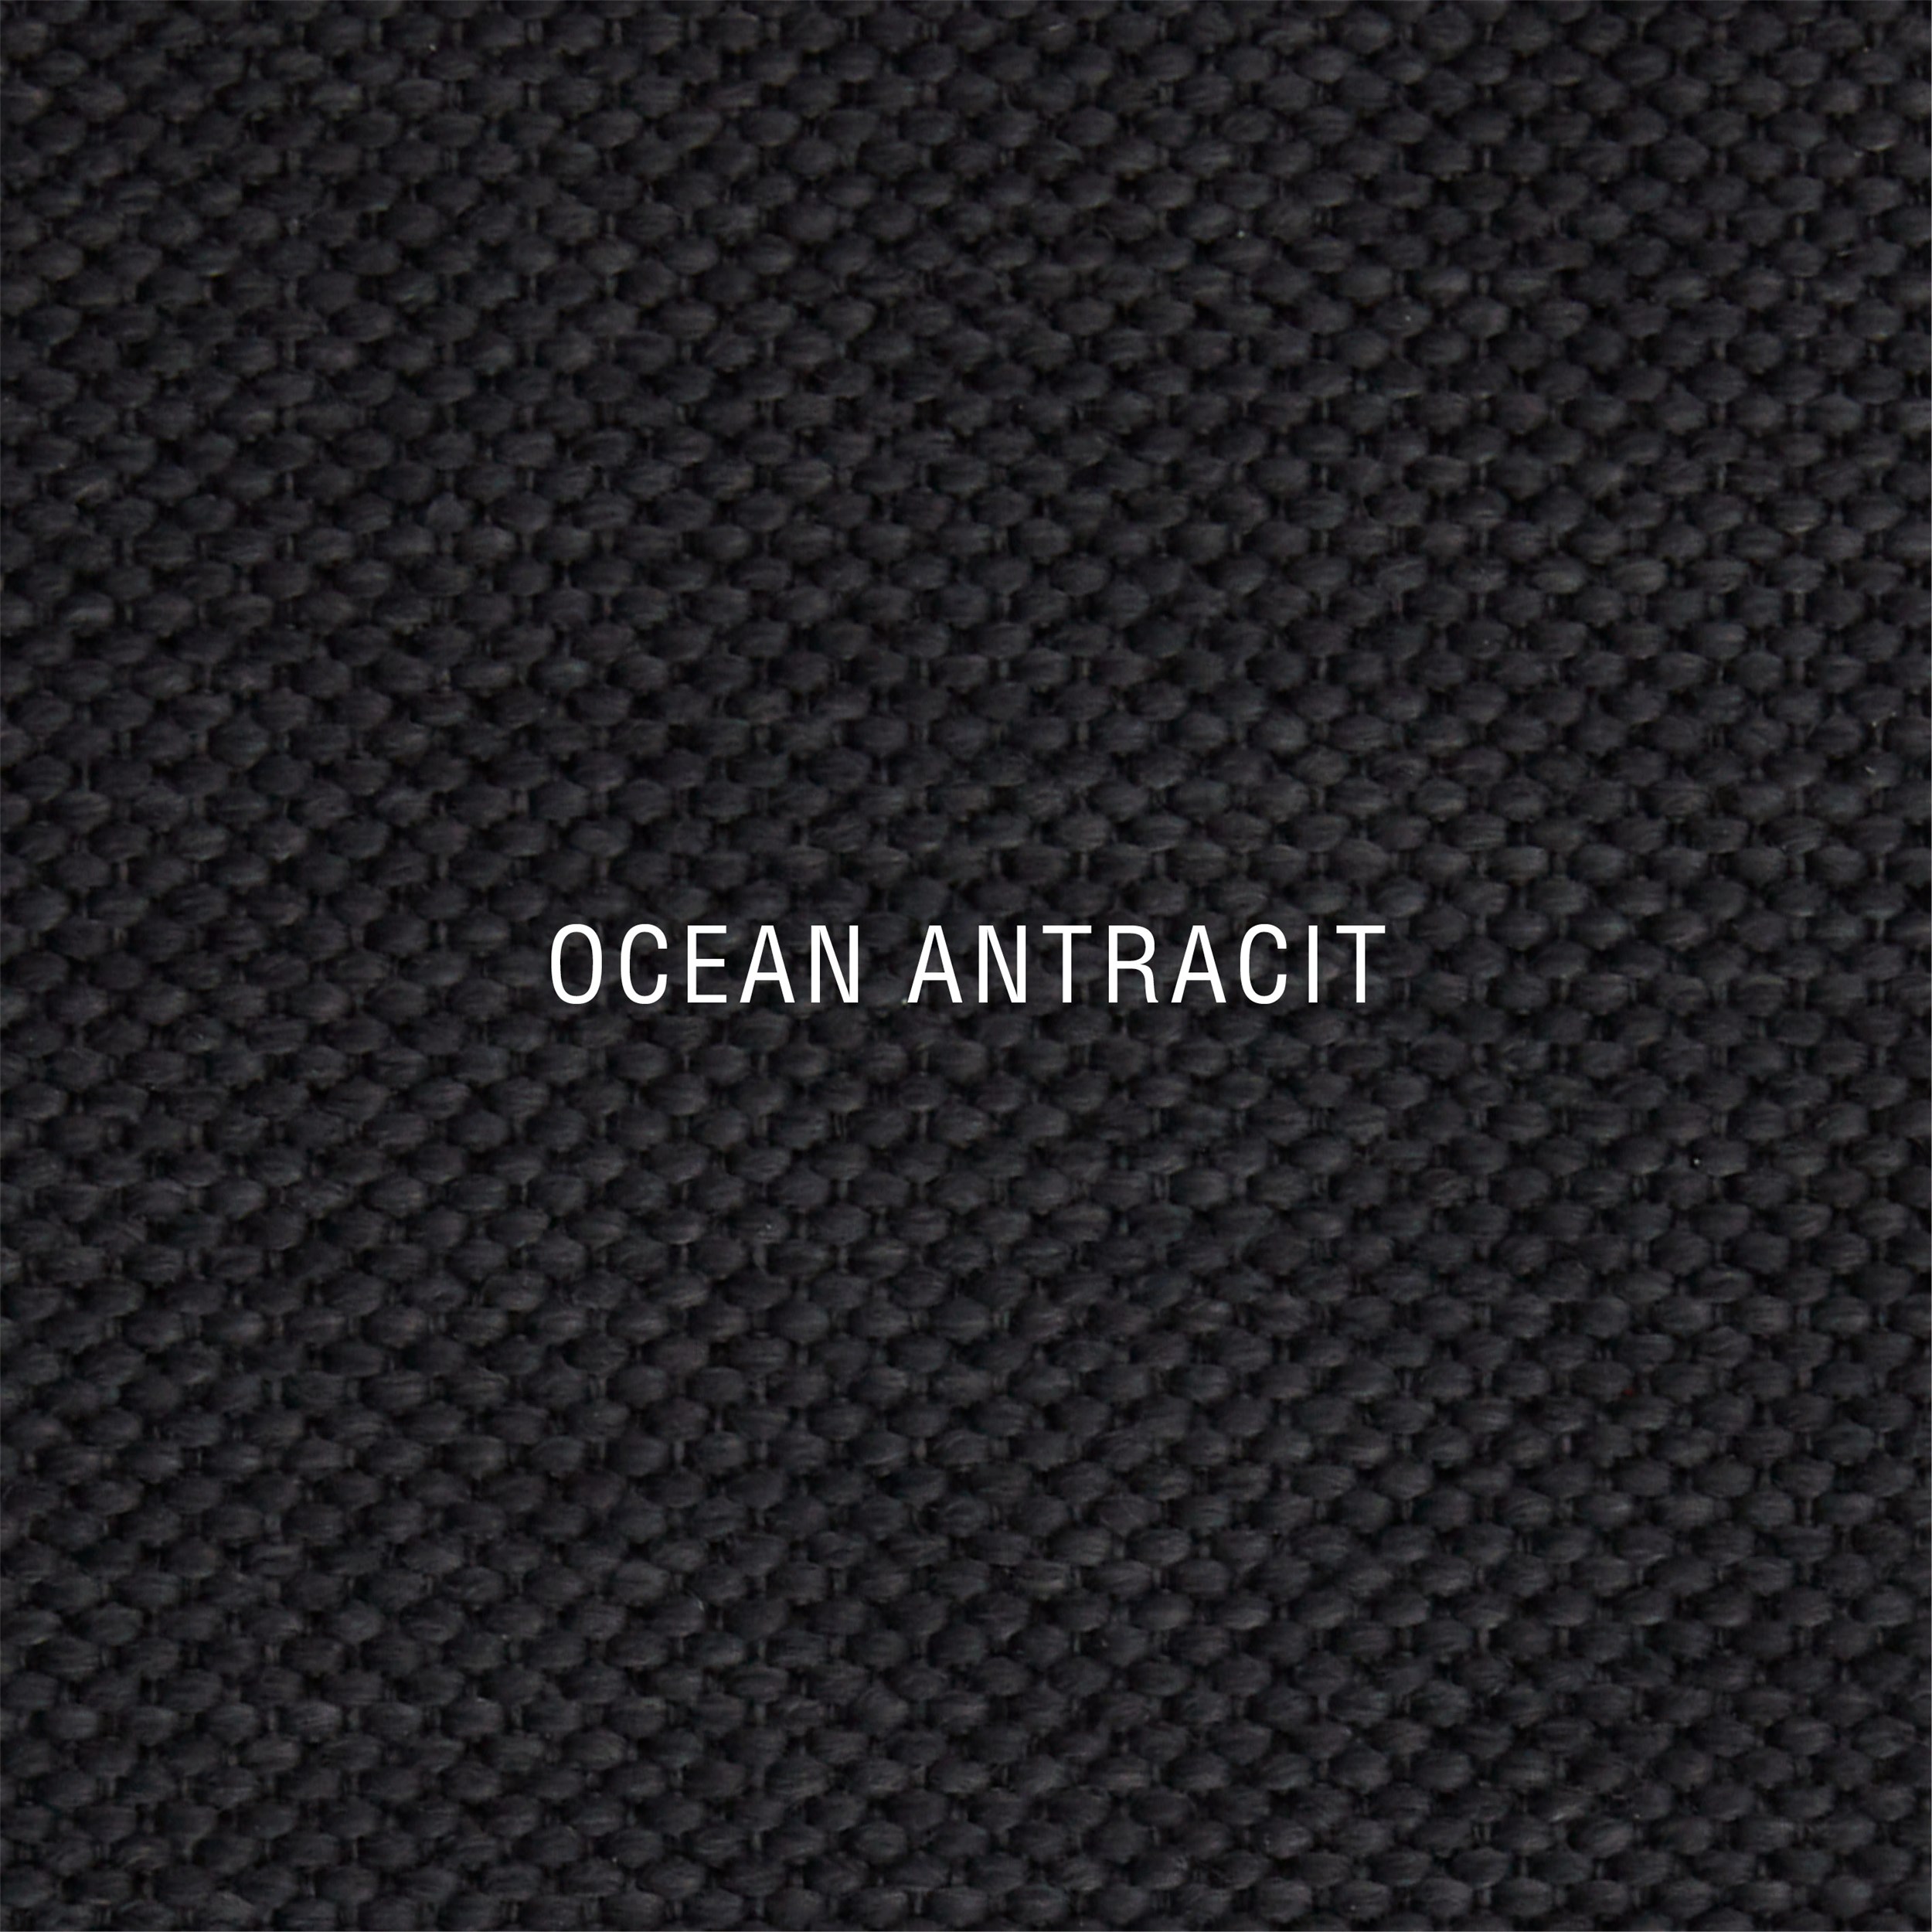 Nocturne Exclusive Ocean inkl. 8 cm Exclusive Svane topmadras, 2 x 90 x 200 cm bokselevationsseng